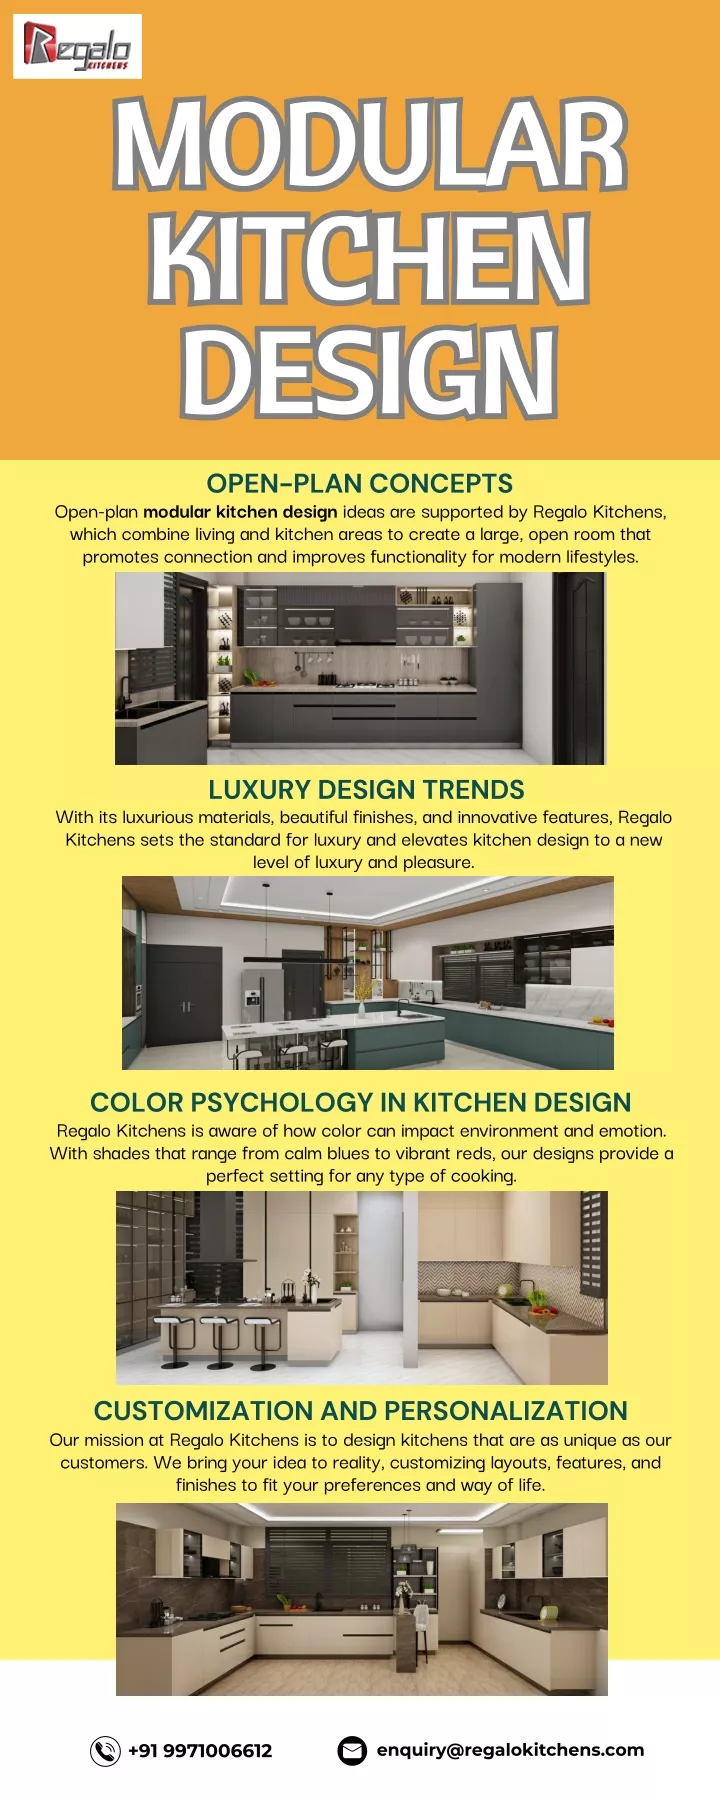 modular kitchen design design